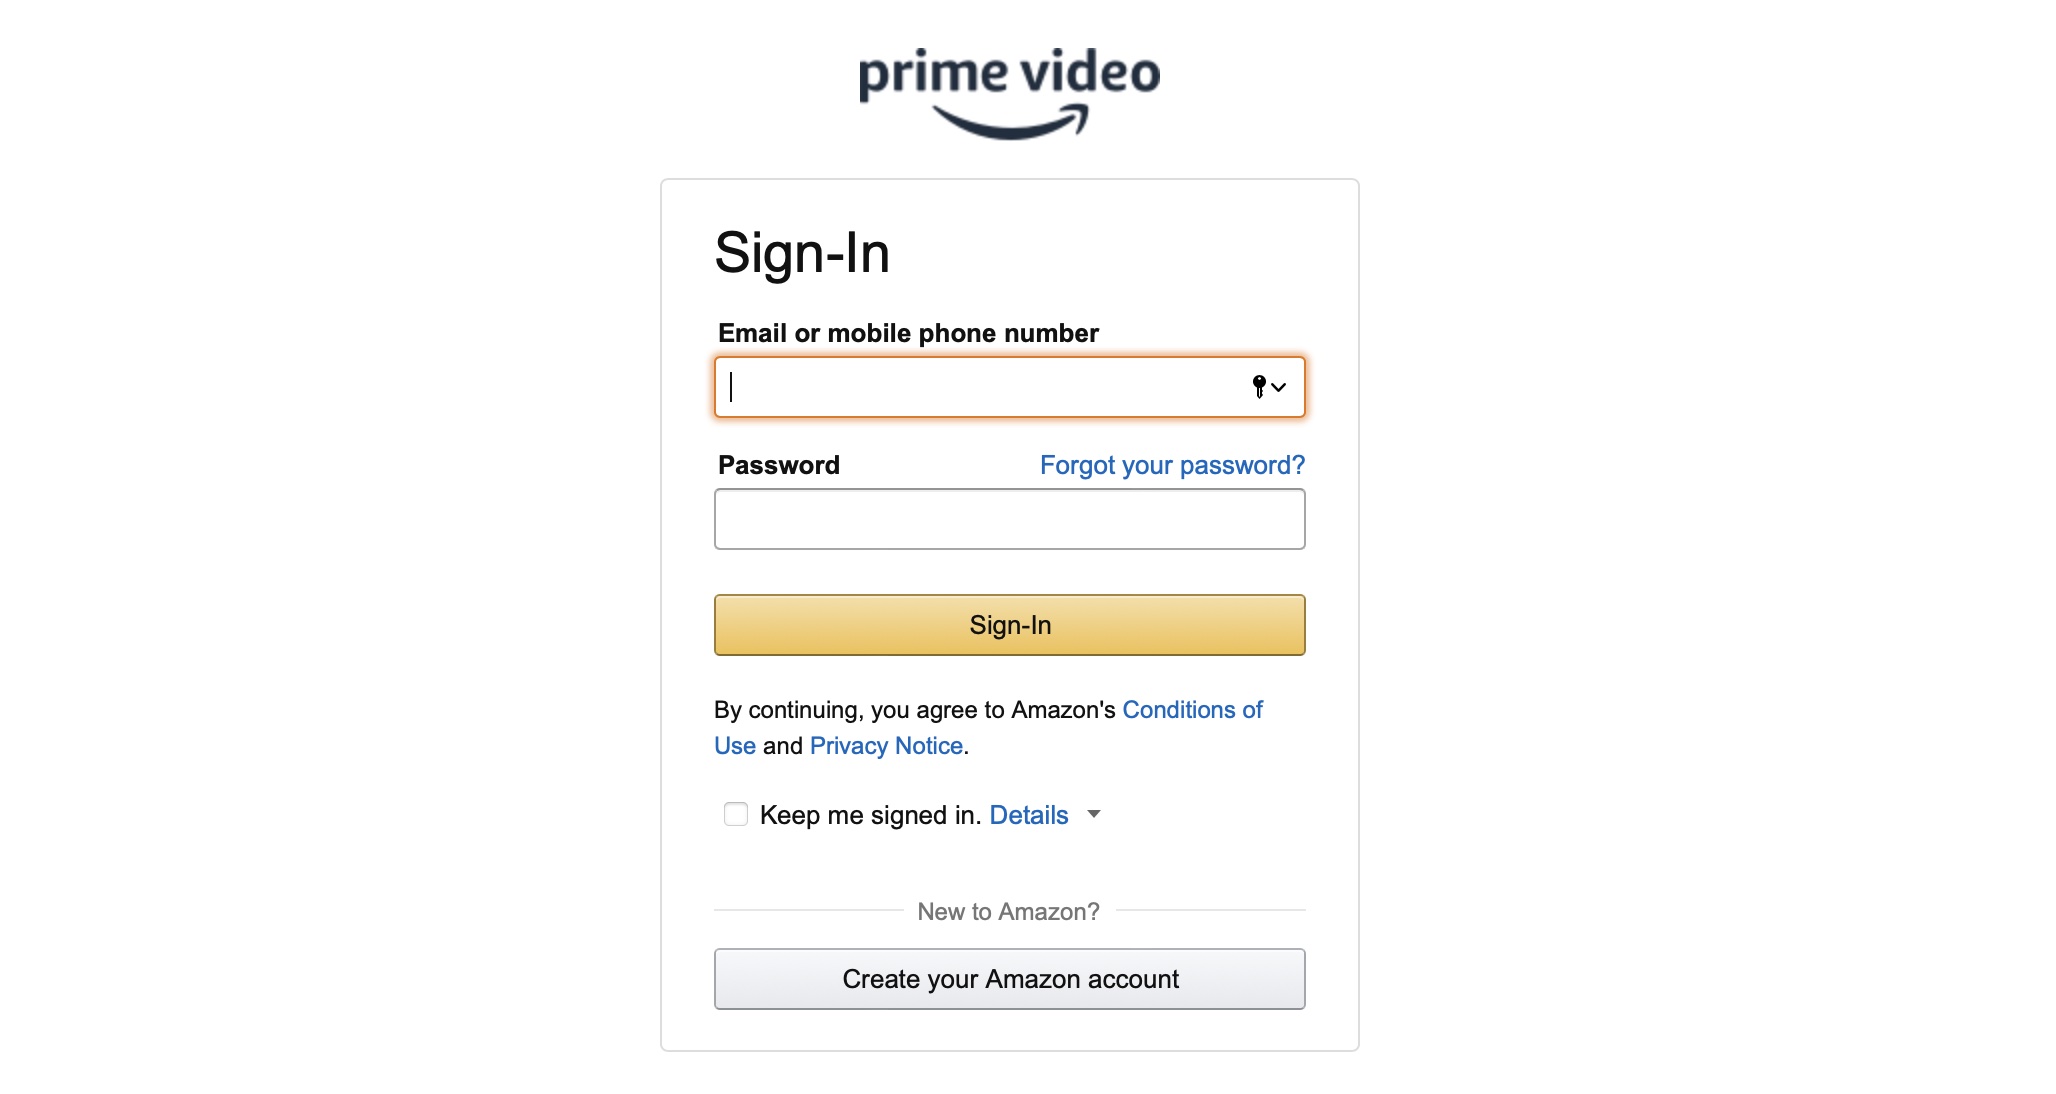 የእርስዎን Amazon Prime Video Watch History እንዴት መሰረዝ እንደሚቻል